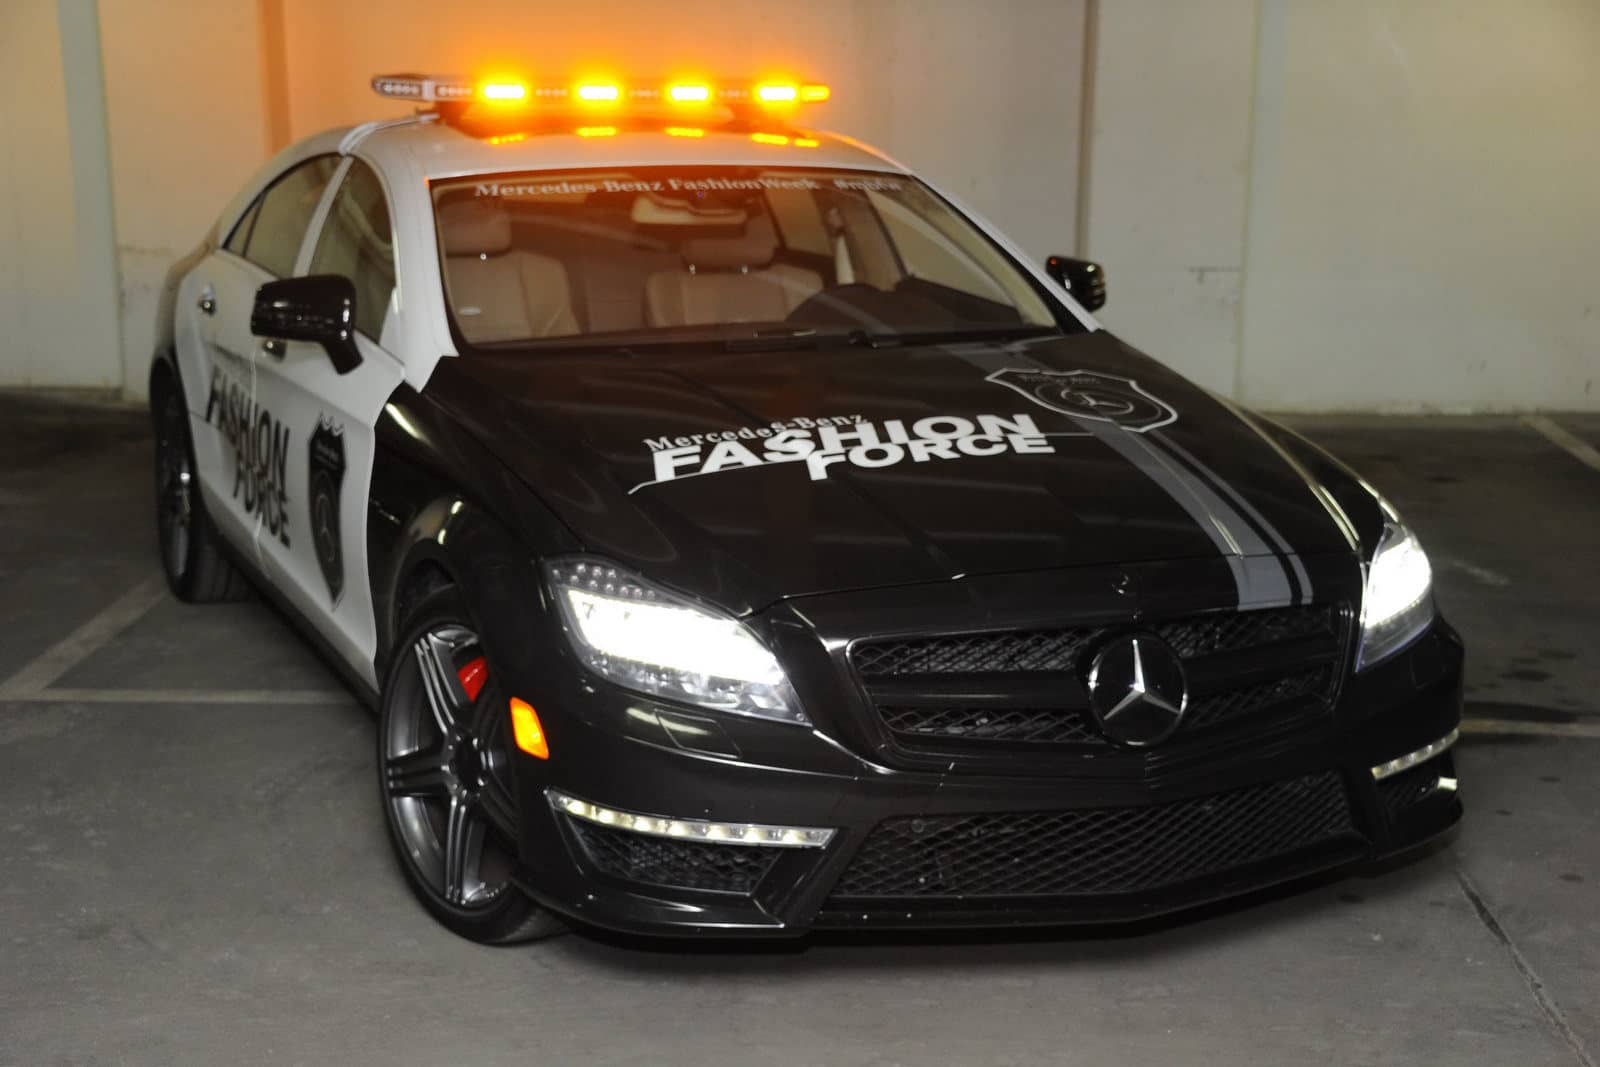 2012 Mercedes CLS 63 AMG Fashion Police Car